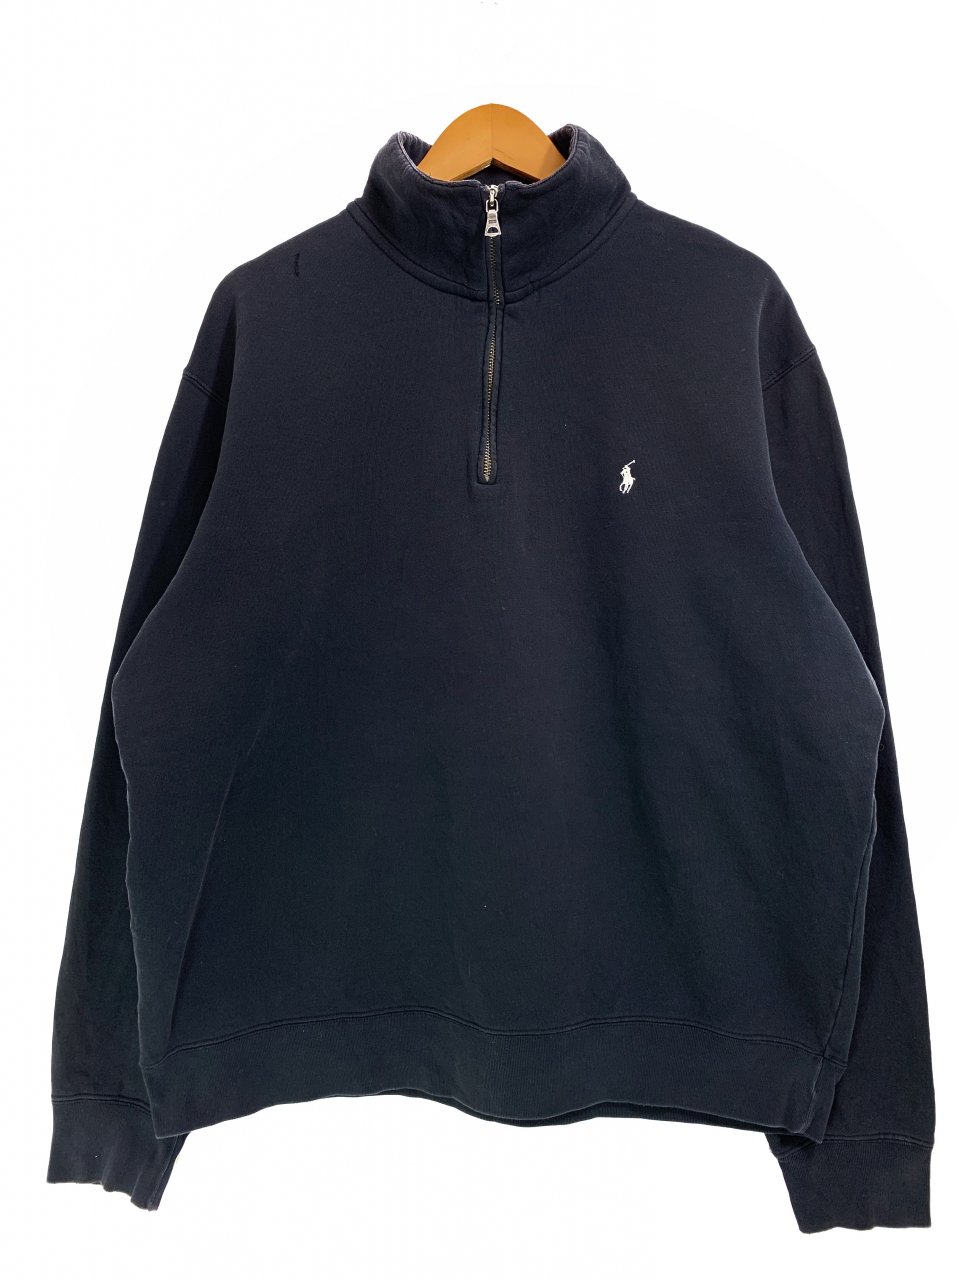 Polo Ralph Lauren Half-Zip Sweatshirt 黒 XL ポロラルフローレン スウェット ハーフジップ ポニー ロゴ 刺繍  ワンポイント - NEWJOKE ONLINE STORE